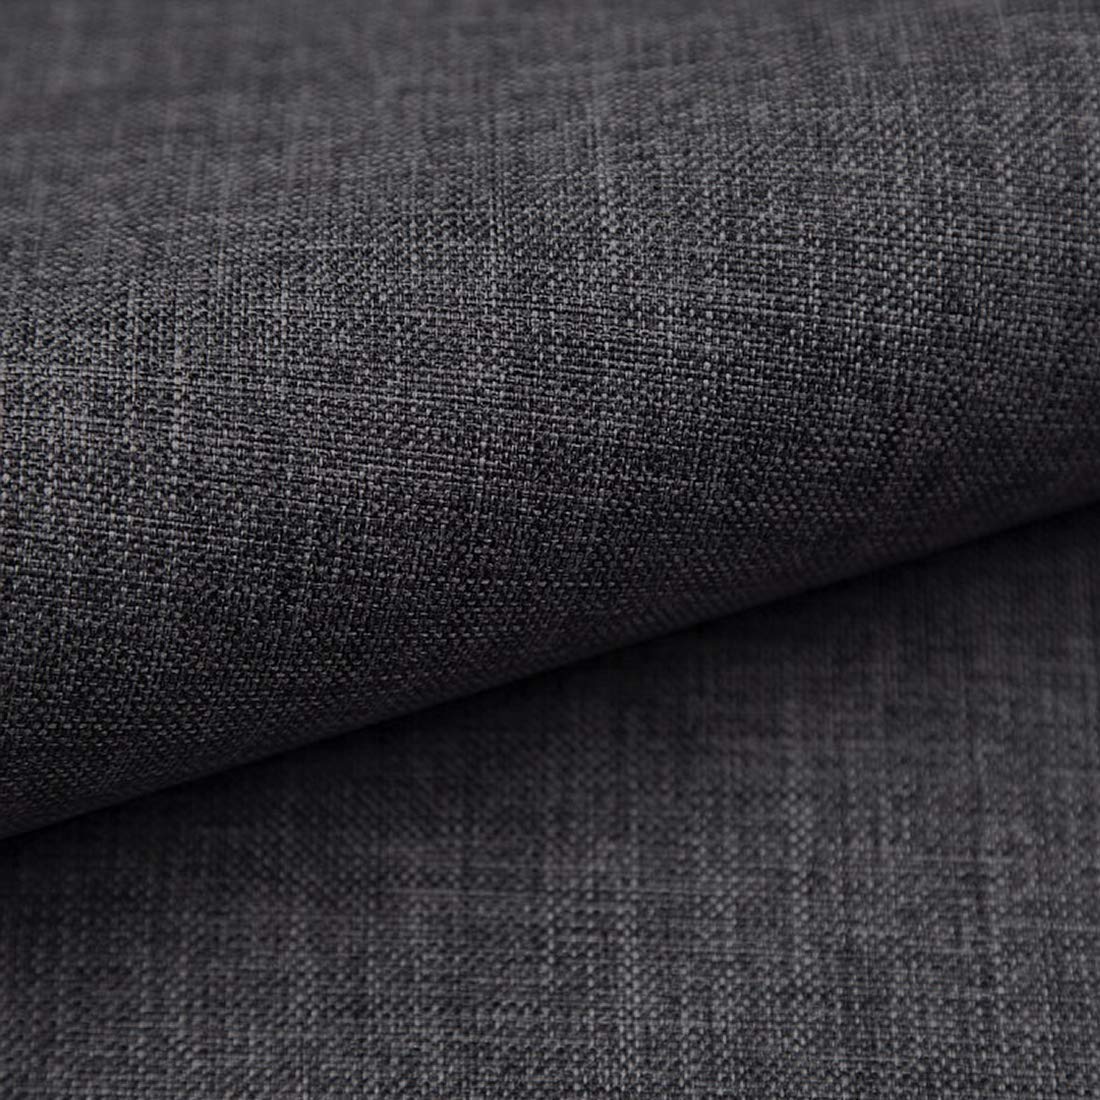 Populaire HEKO PANELS Torino Tissu d´ameublement au mètre, par exemple tissu pour chaises ou banquette d´angle - Graphite rvTQqYpR1 Outlet Shop 